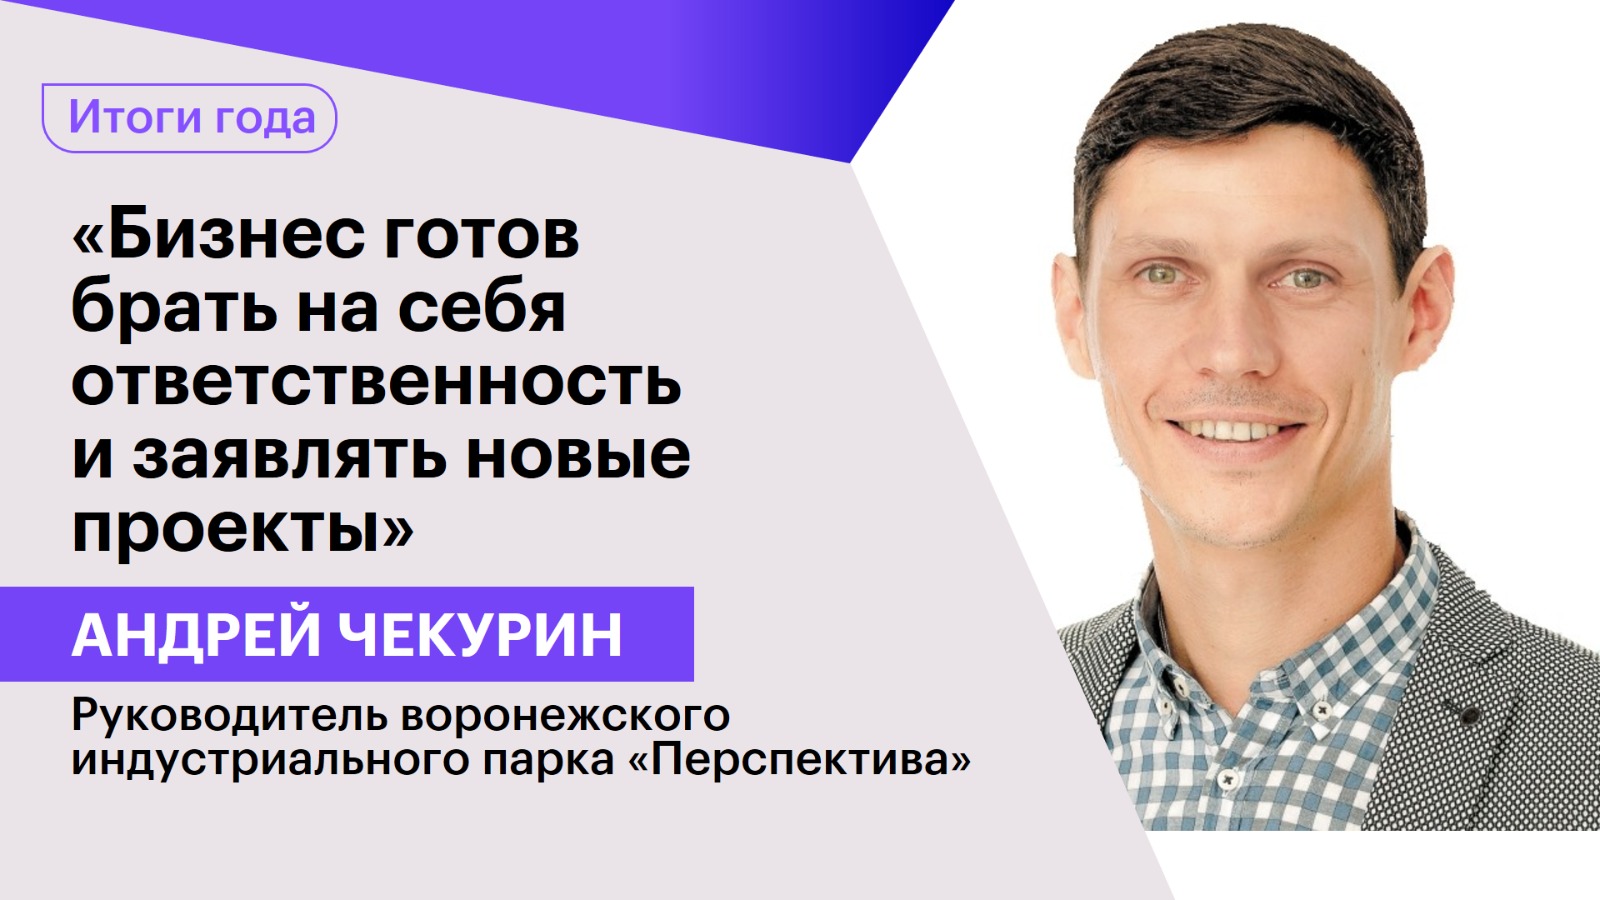 Андрей Чекурин: «Бизнес готов брать на себя ответственность и заявлять новые проекты»